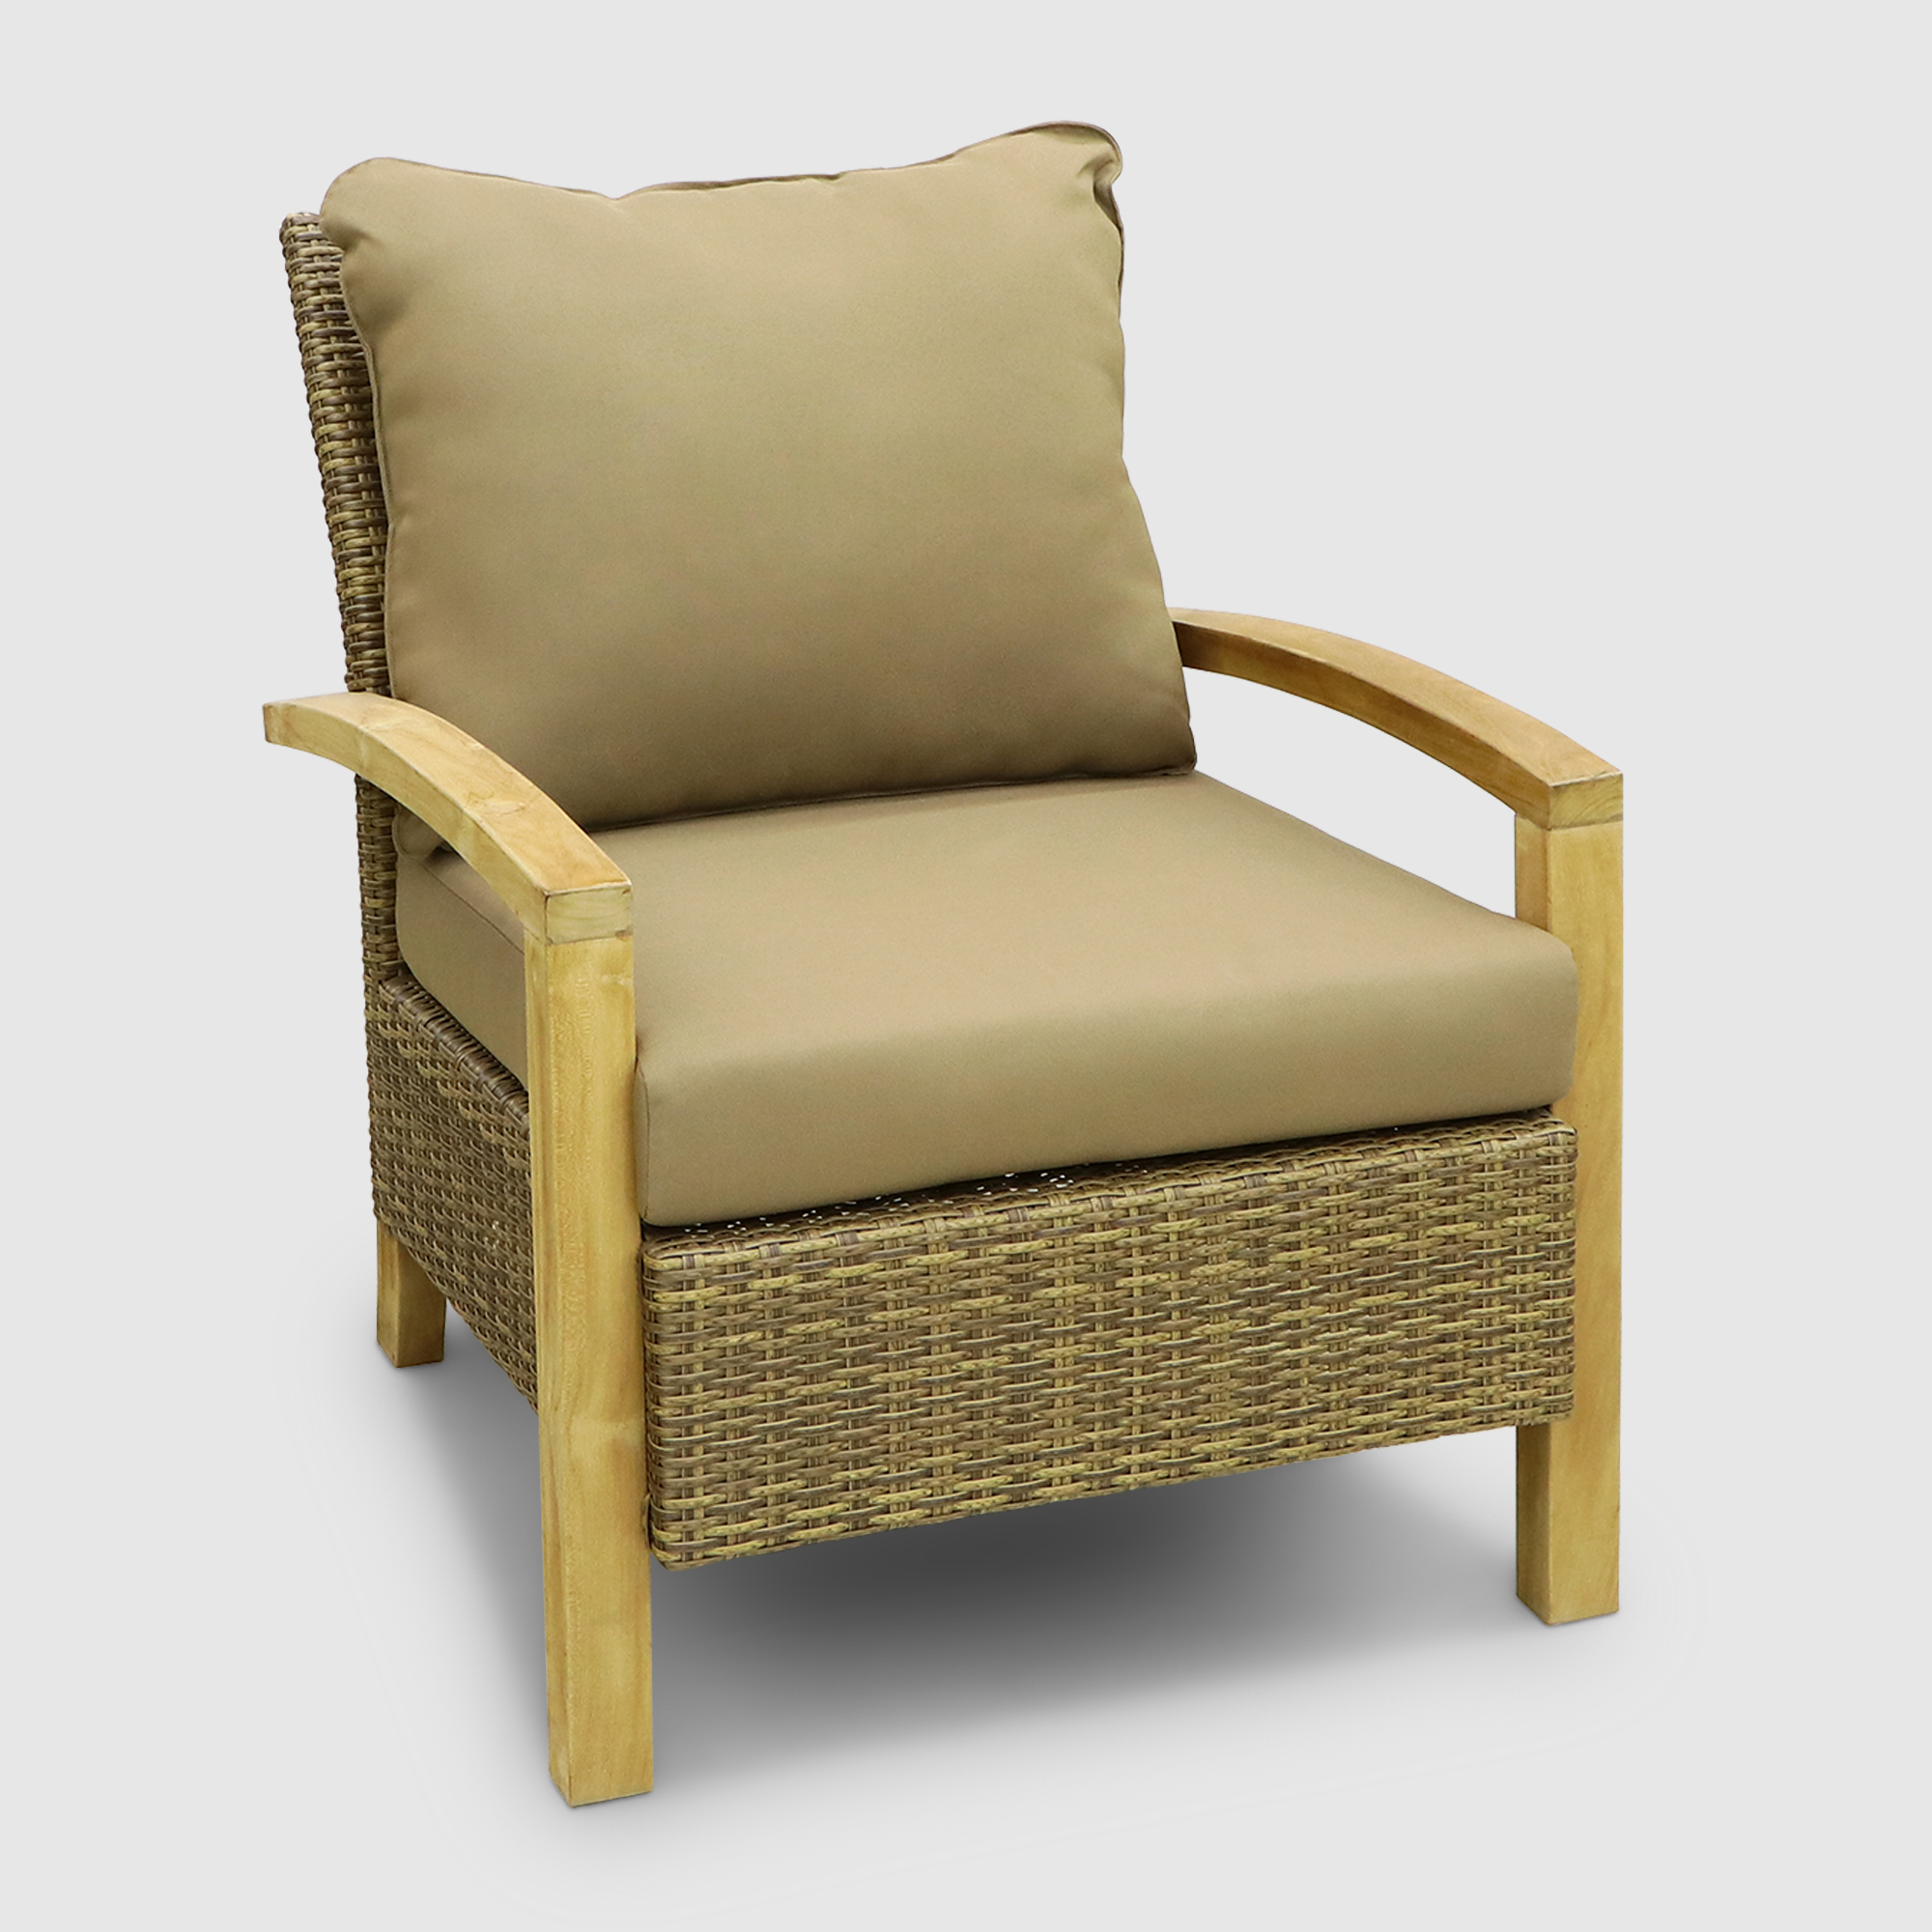 Комплект мебели Jepara Bastian 5 предметов, цвет светло-коричневый, размер 240х88х125 - фото 4